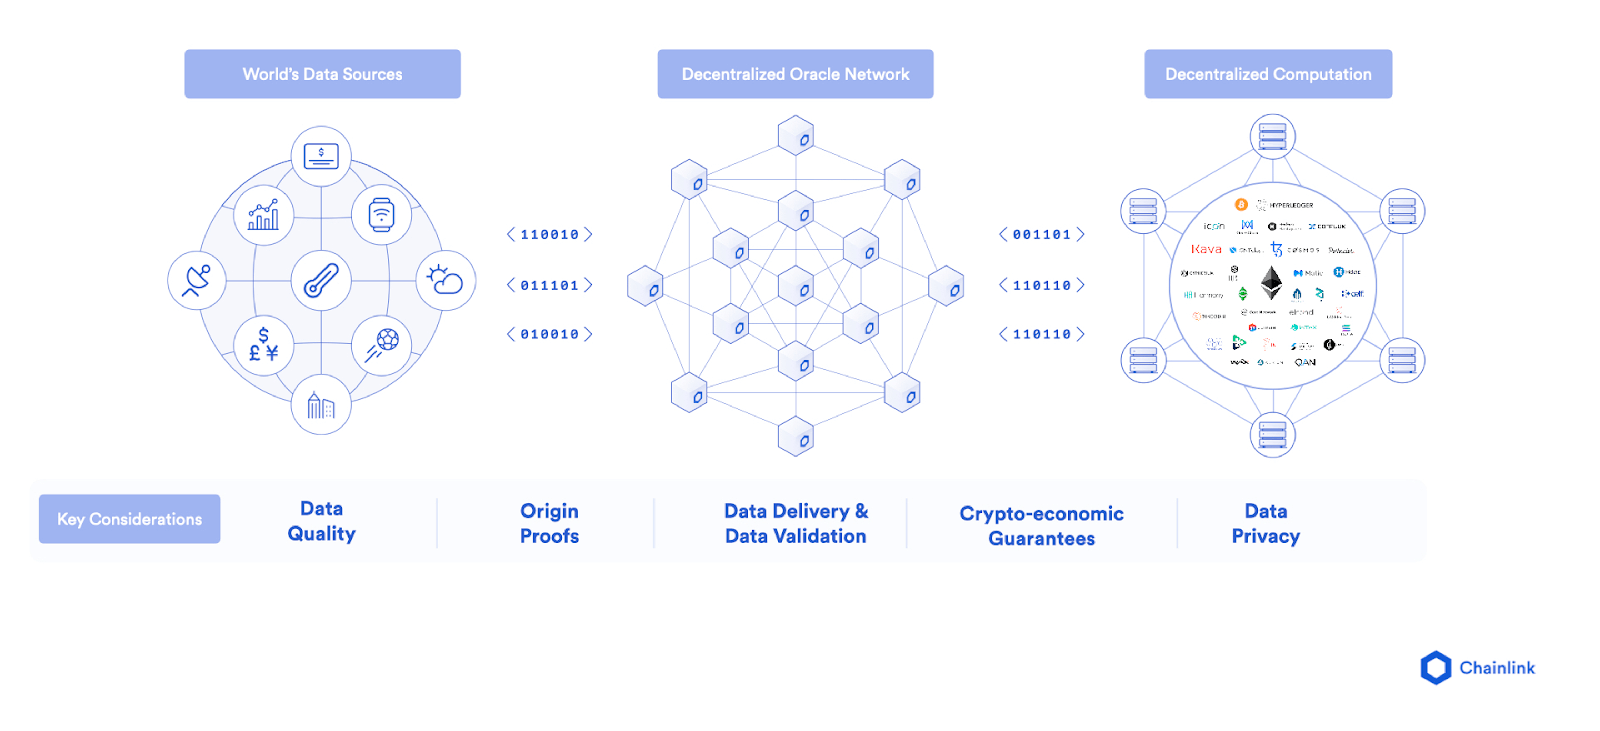 Decentralized Oracle Networks (DONs) cho phép các hợp đồng thông minh kết nối an toàn với dữ liệu và hệ thống bên ngoài